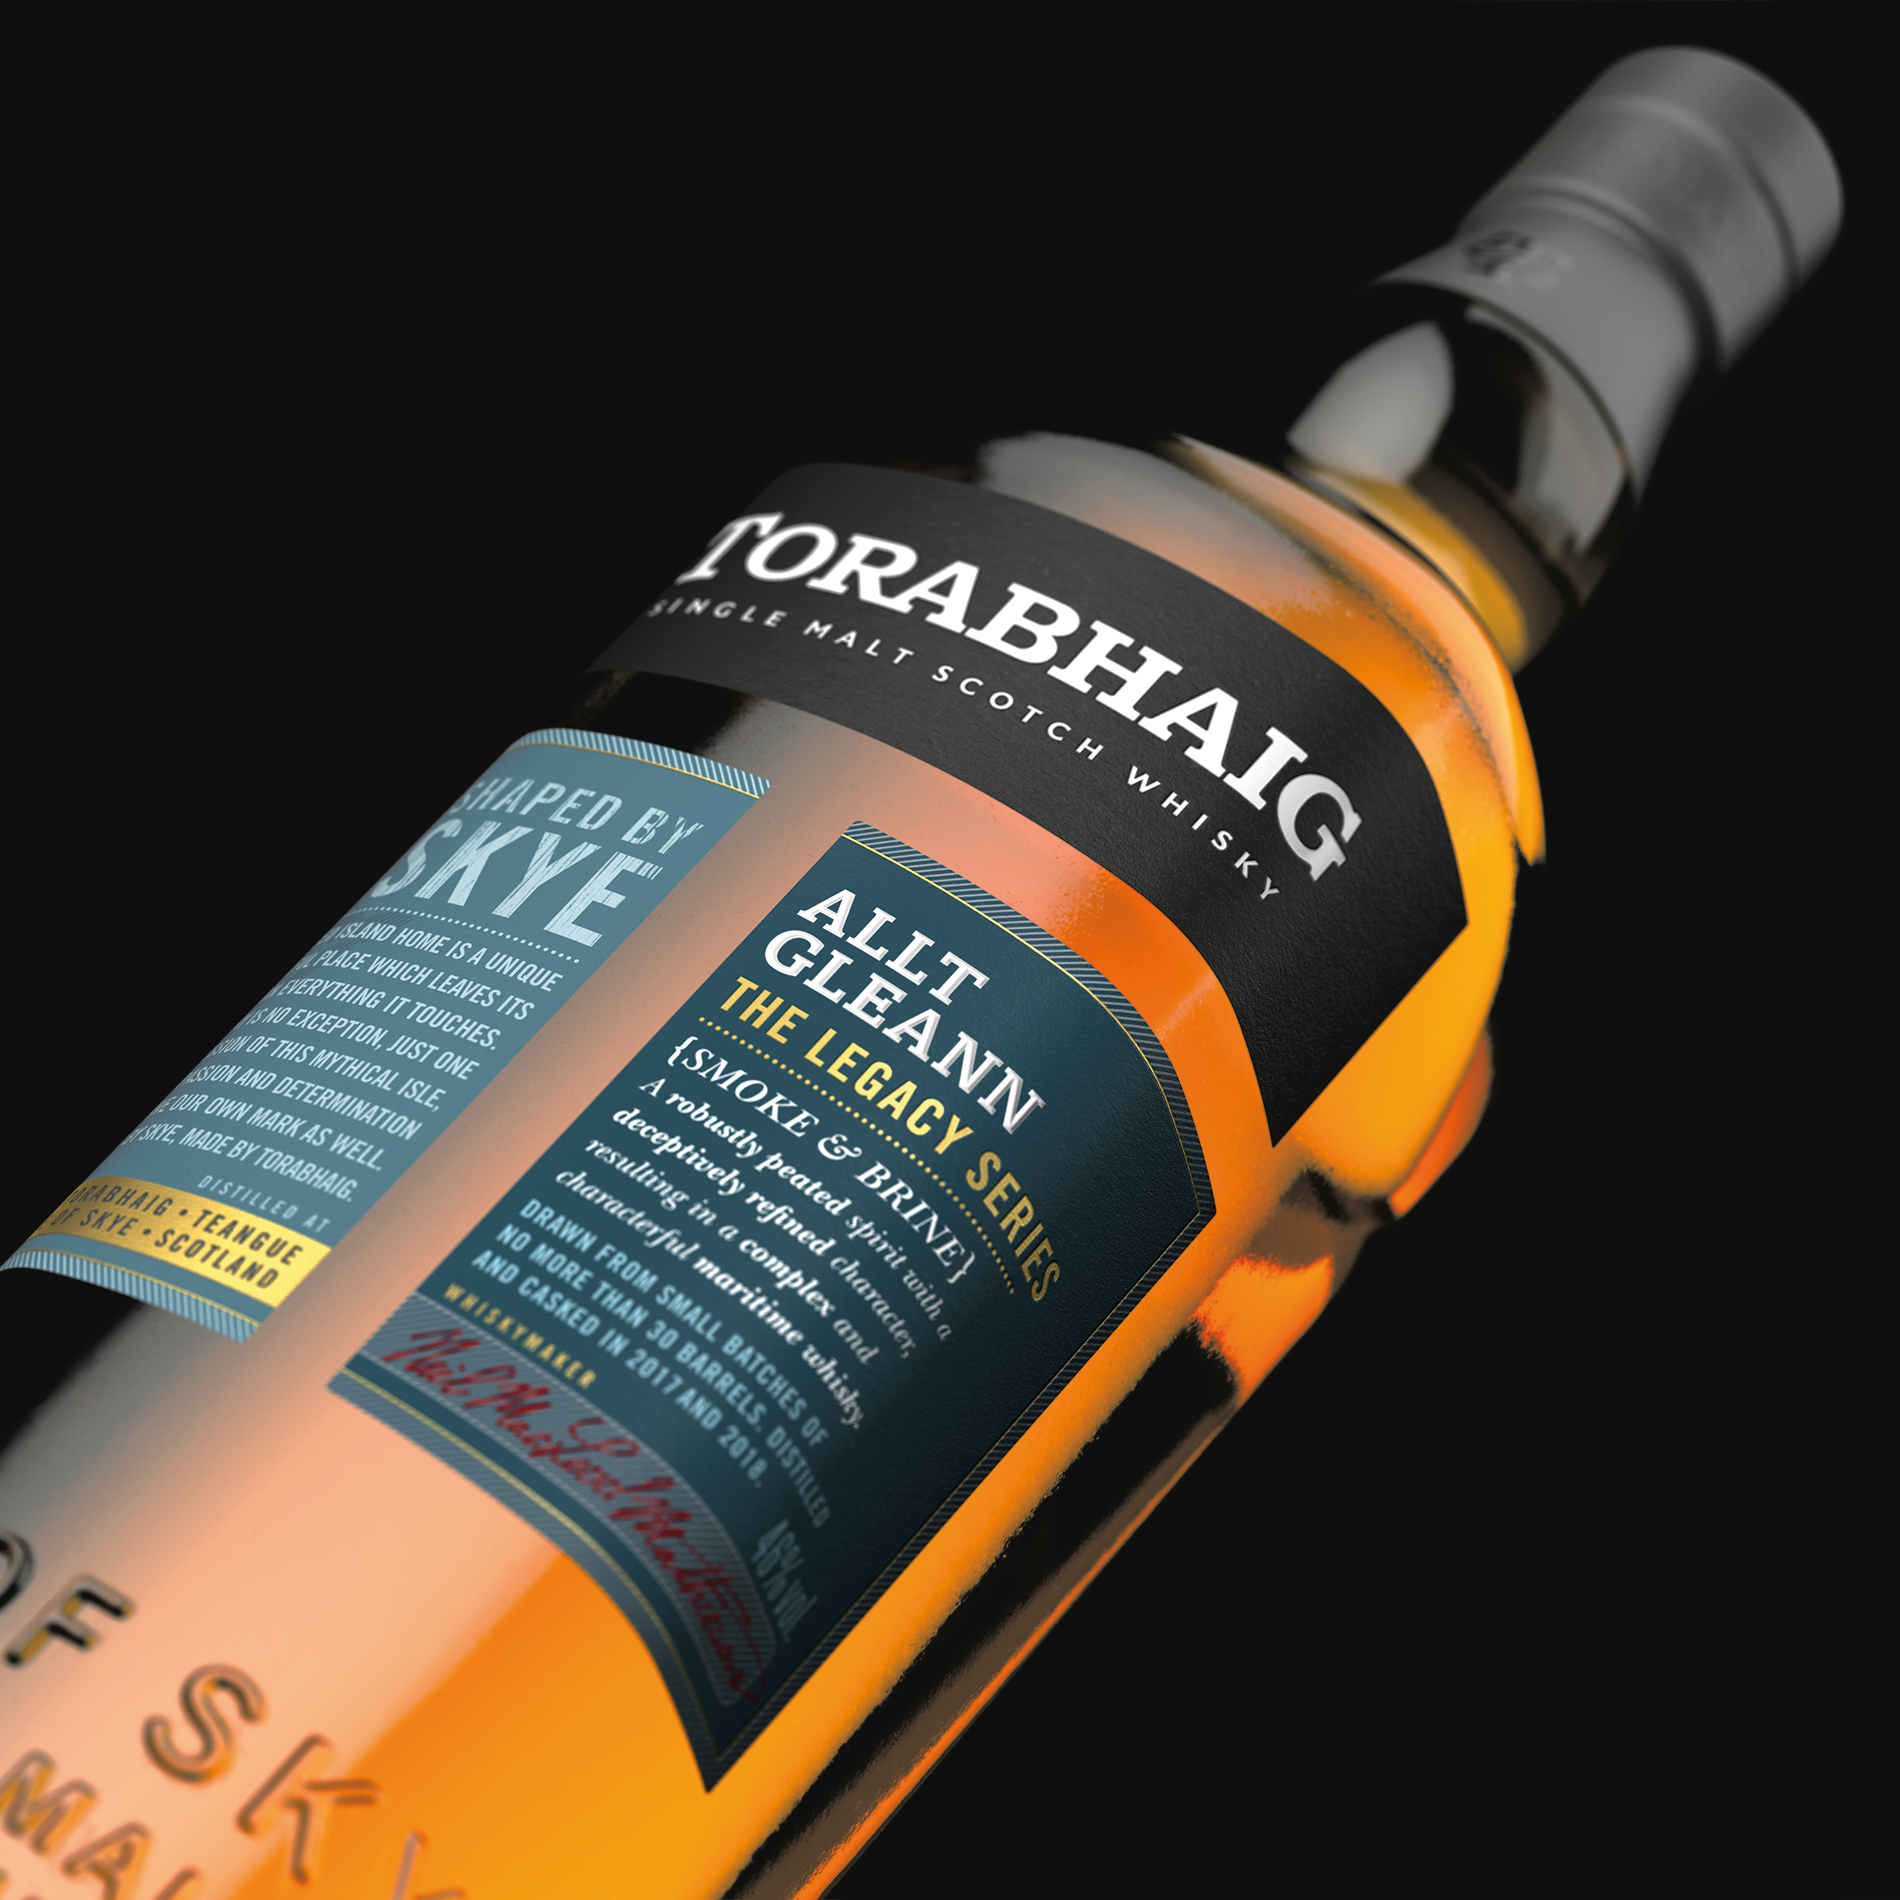 Torabhaig Single Malt - Allt Gleann, The Legacy Series 2nd Edition -  Torabhaig Distillery